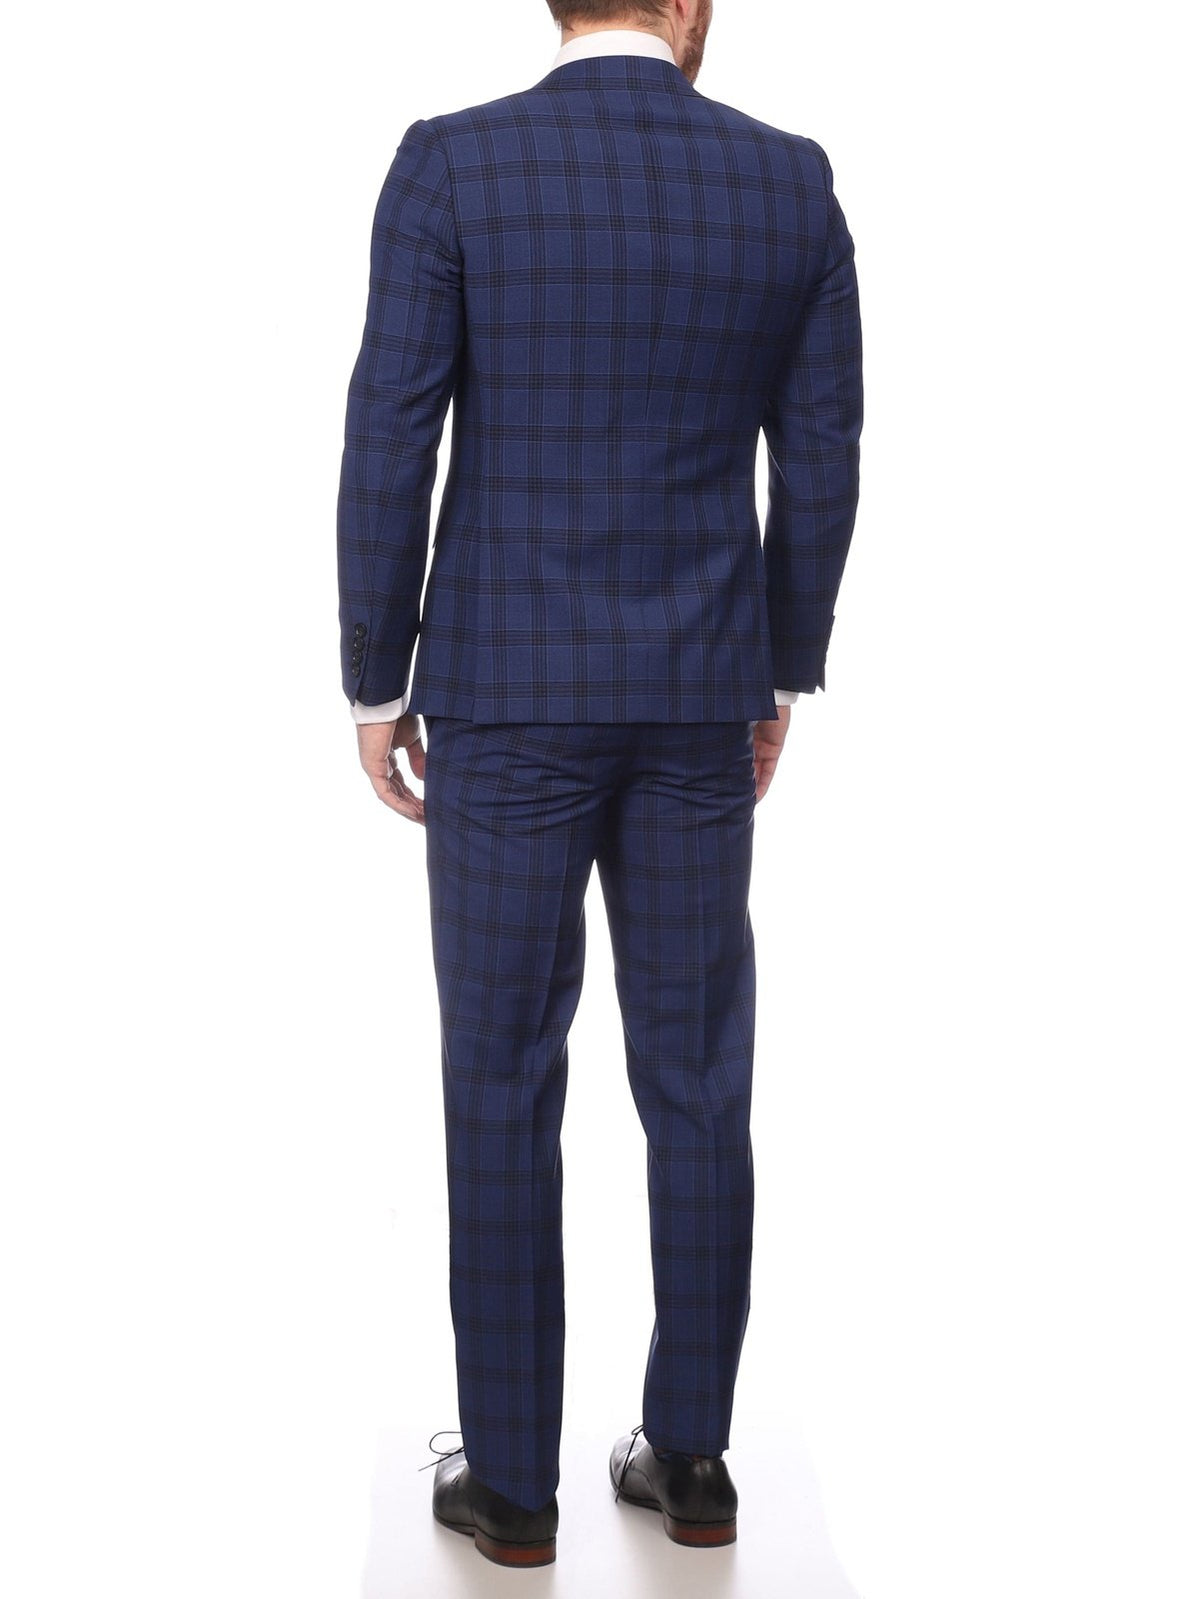 Napoli SUITS Napoli Mens Blue Plaid Half Canvassed 100% Italian Wool Slim Fit Suit